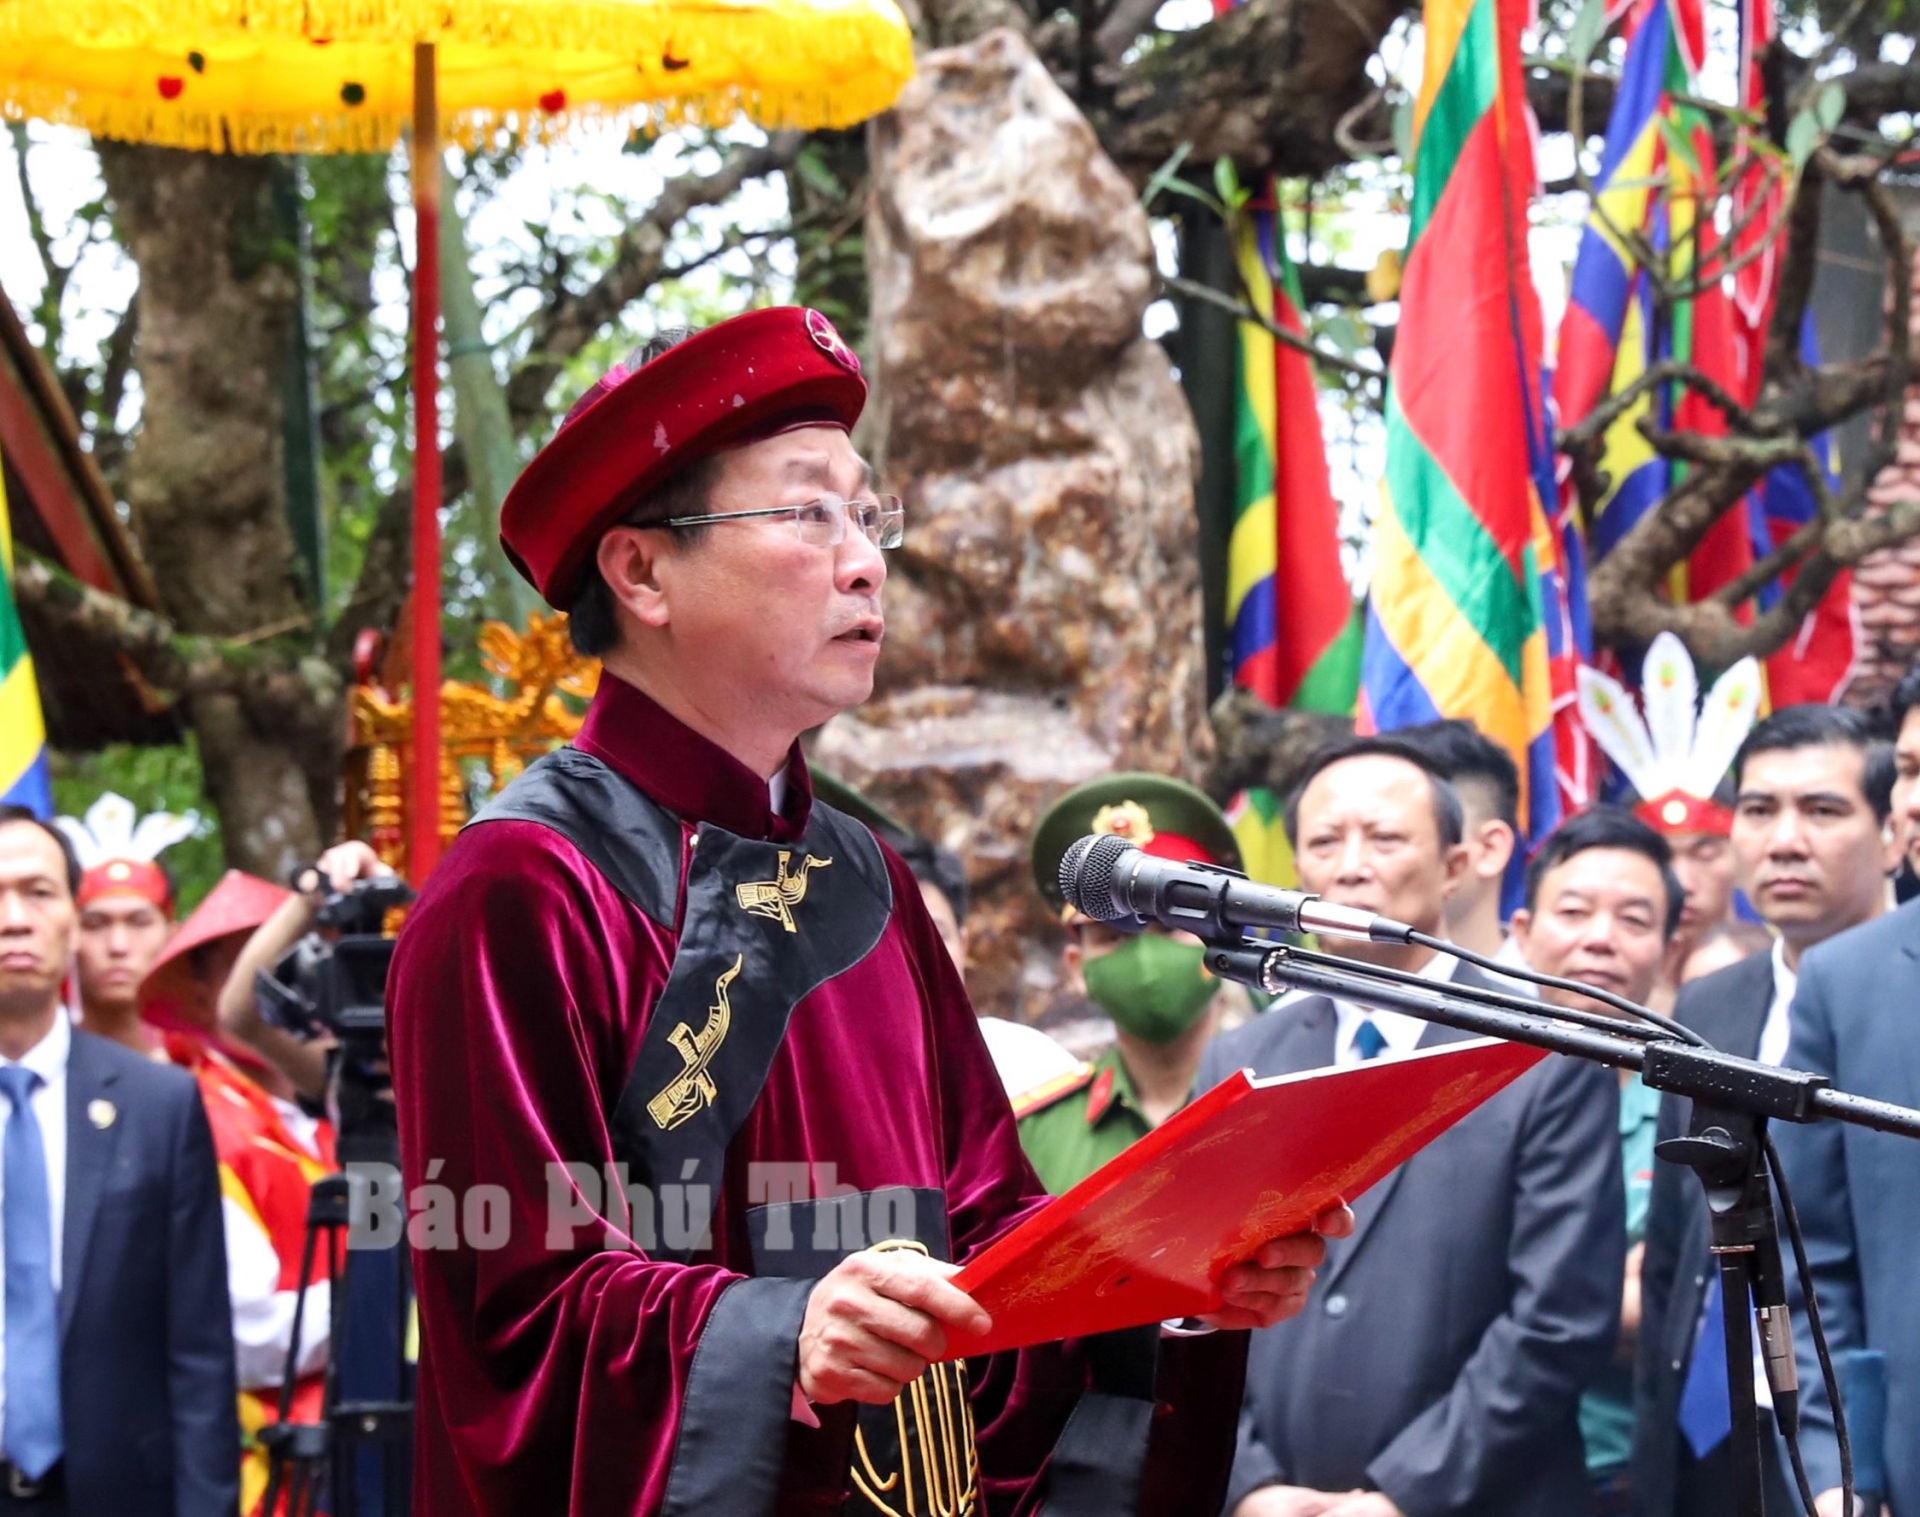 Đồng chí Bùi Văn Quang - Phó Bí thư Tỉnh ủy, Chủ tịch UBND tỉnh Phú Thọ, kính cẩn đọc Chúc văn tưởng niệm các Vua Hùng.